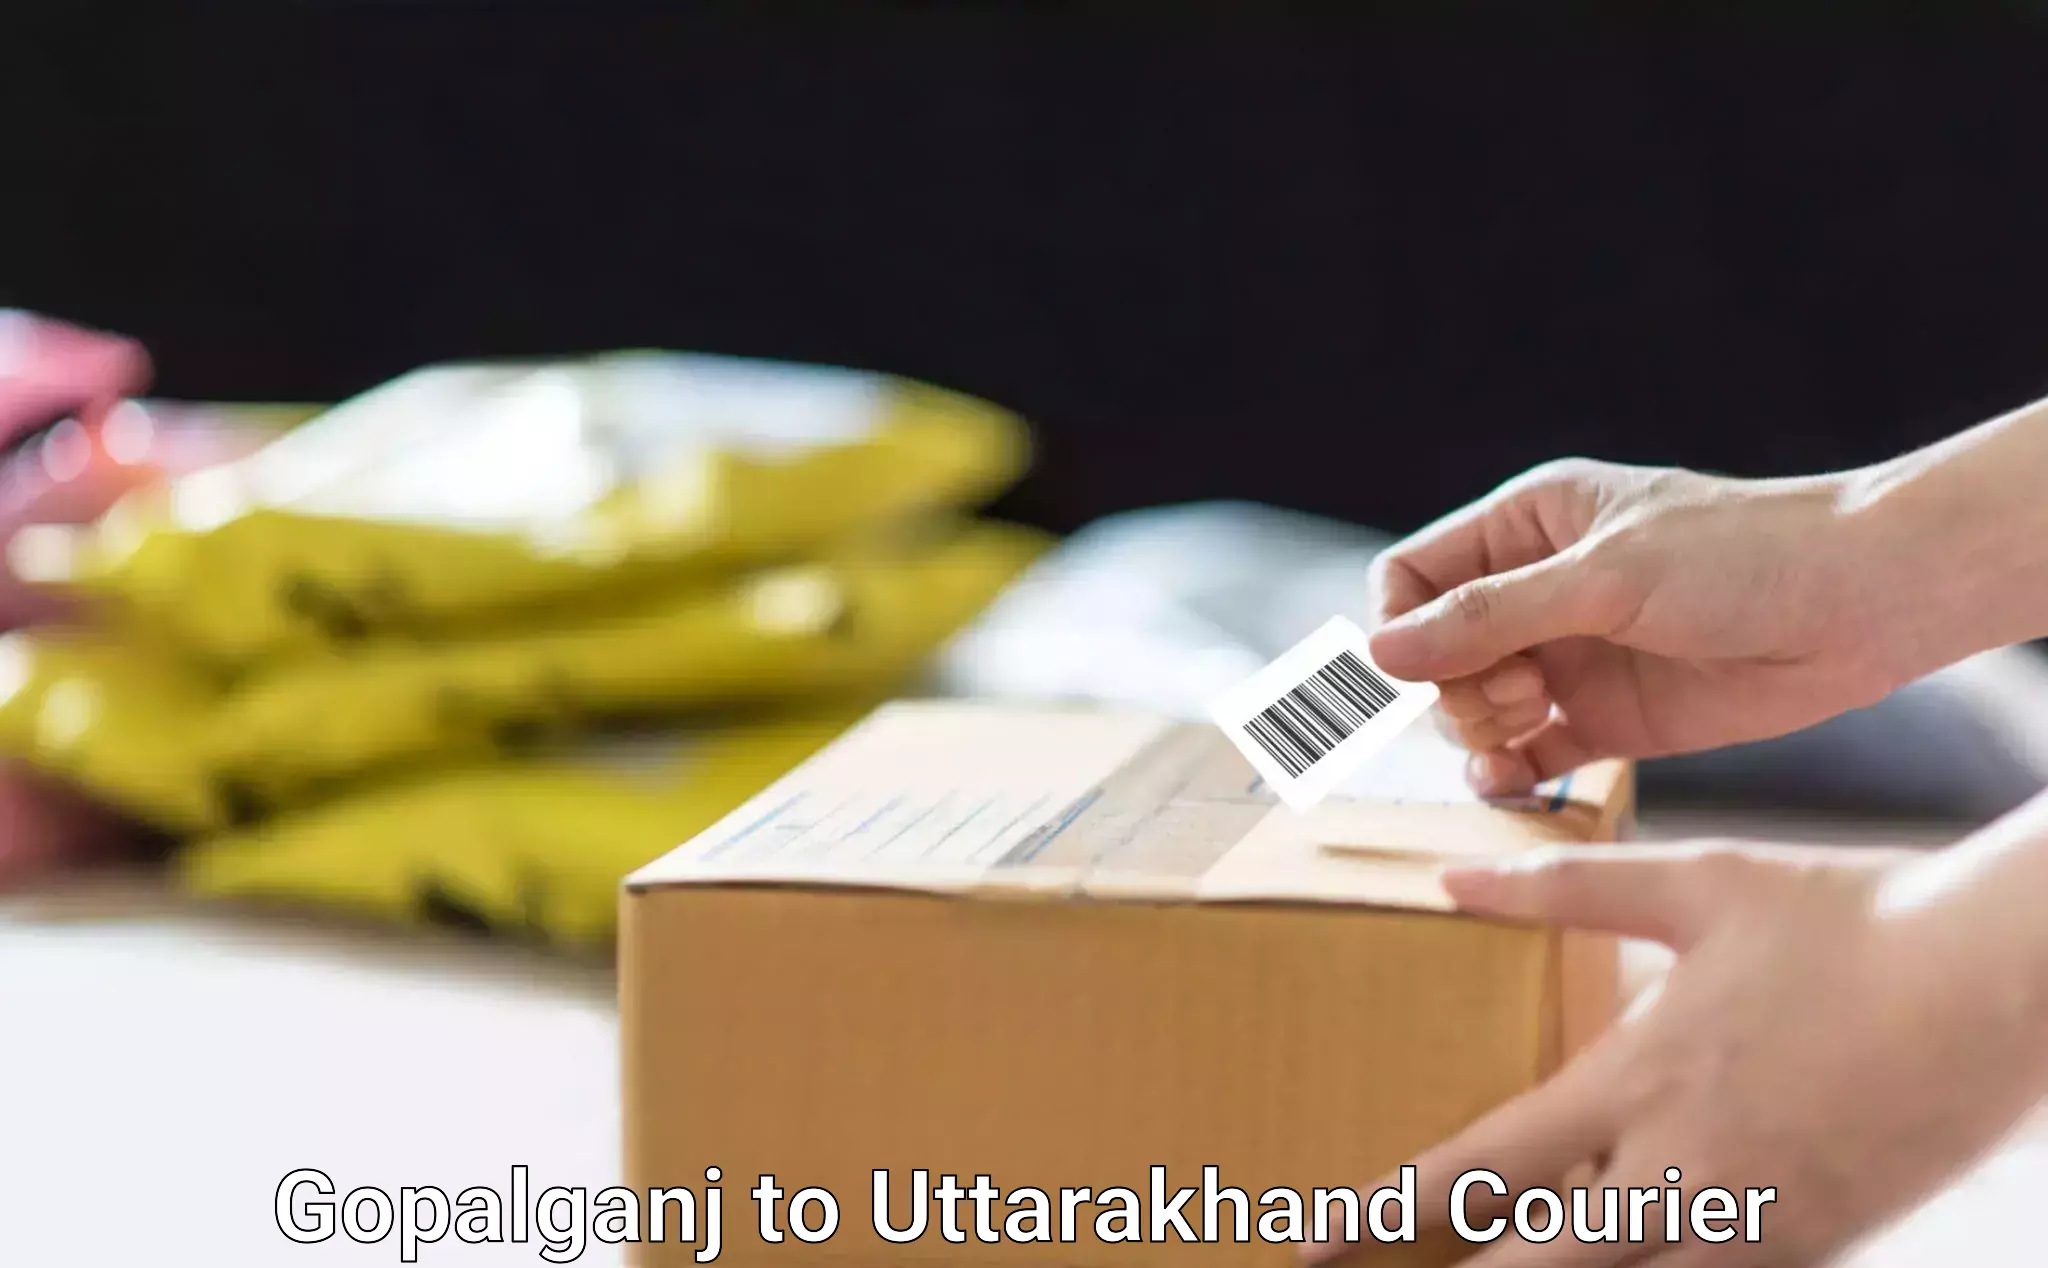 Professional movers and packers Gopalganj to Uttarakhand